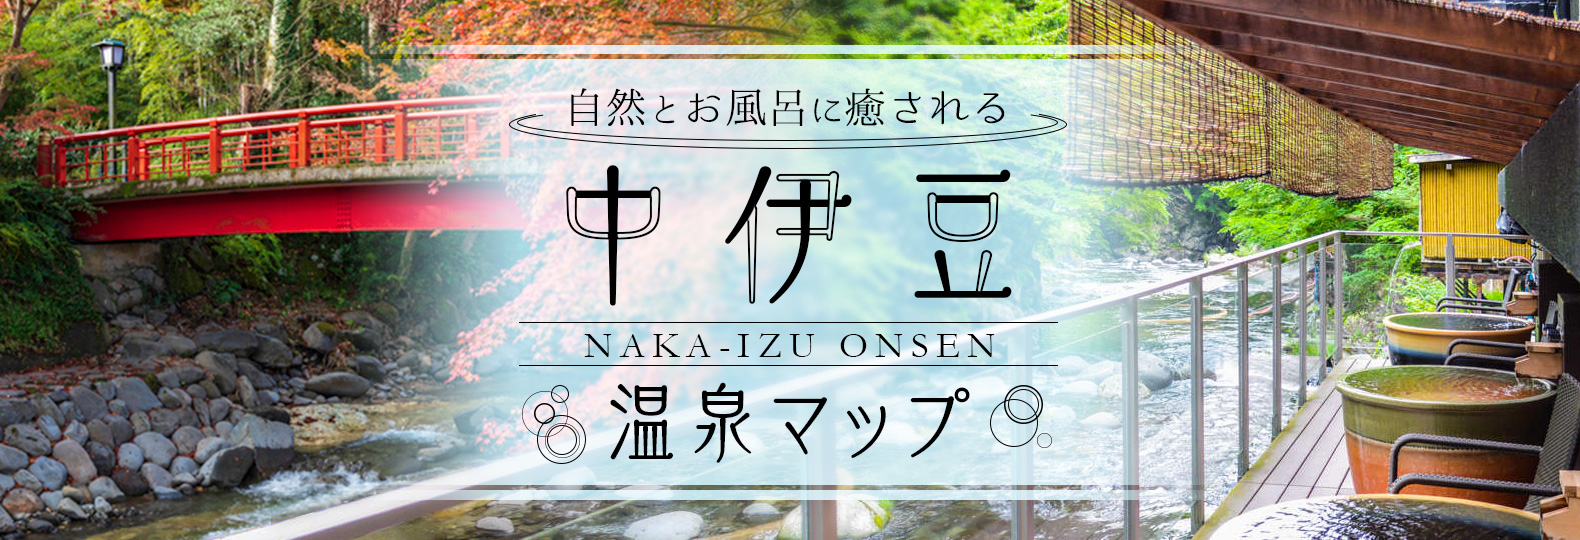 自然とお風呂に癒される 中伊豆温泉マップ